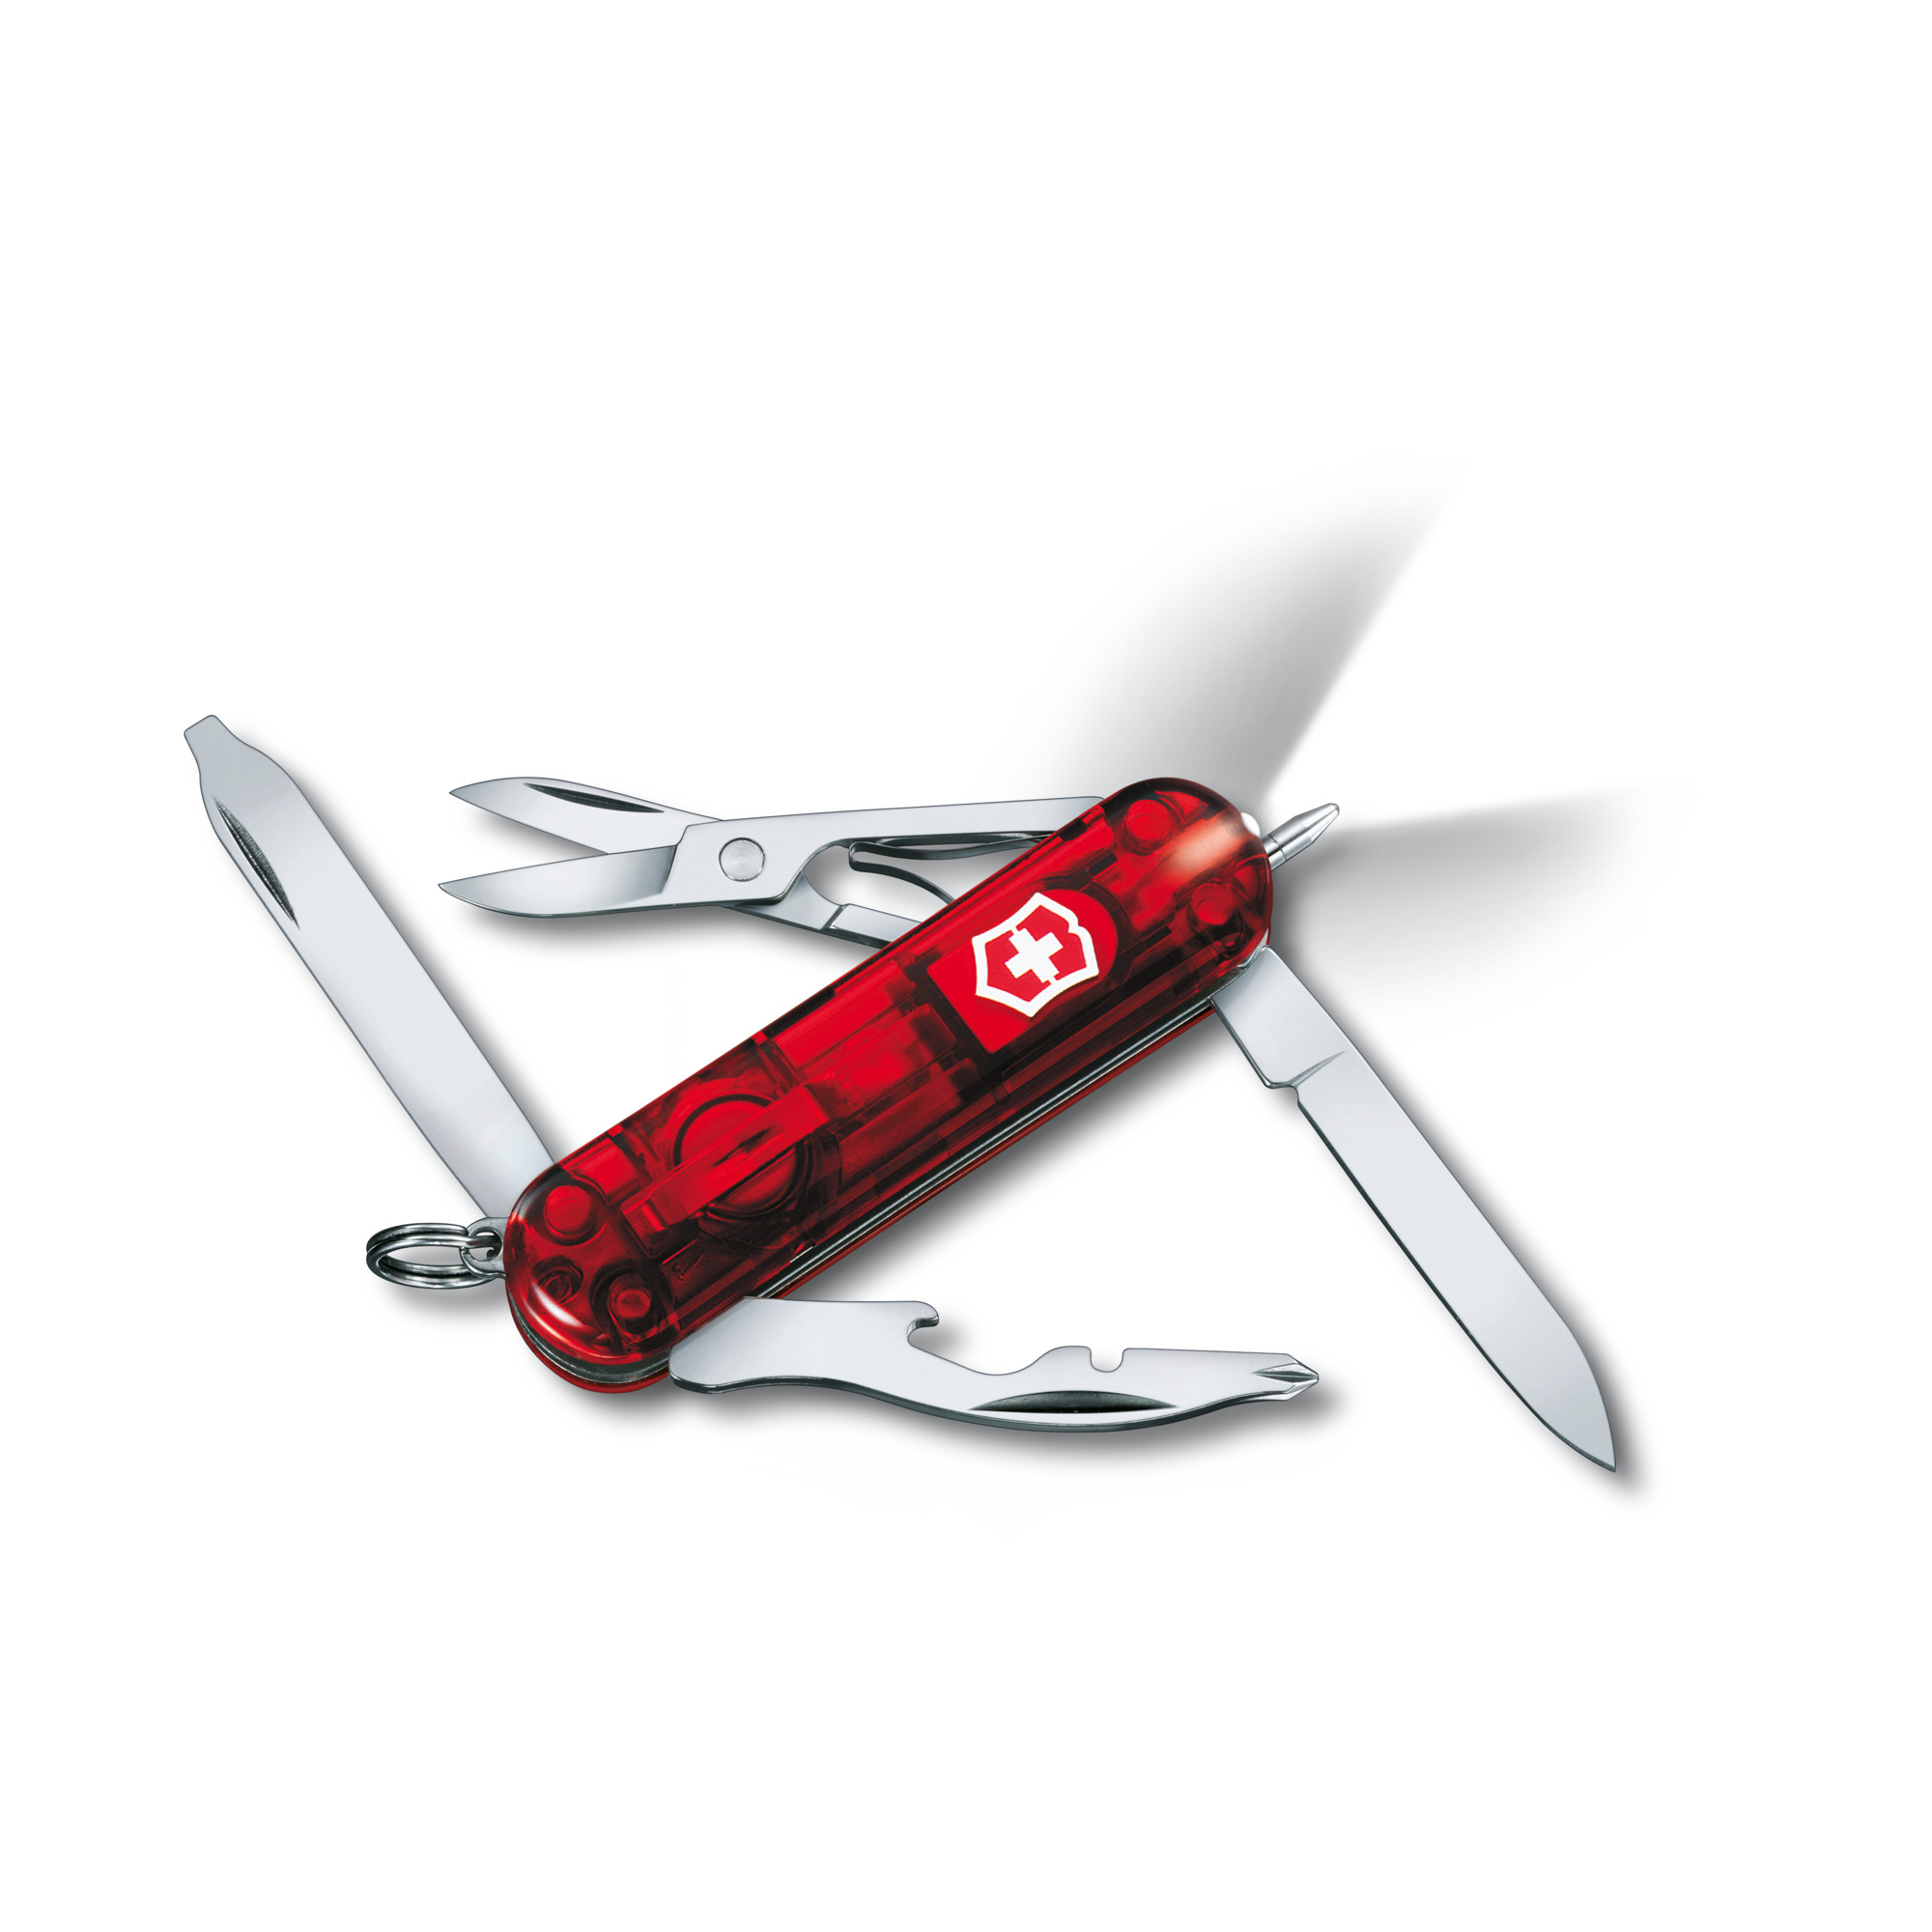 Taschenmesser MIDNITE MANAGER rot transparent 0.6366.T mit 10 Funktionen 